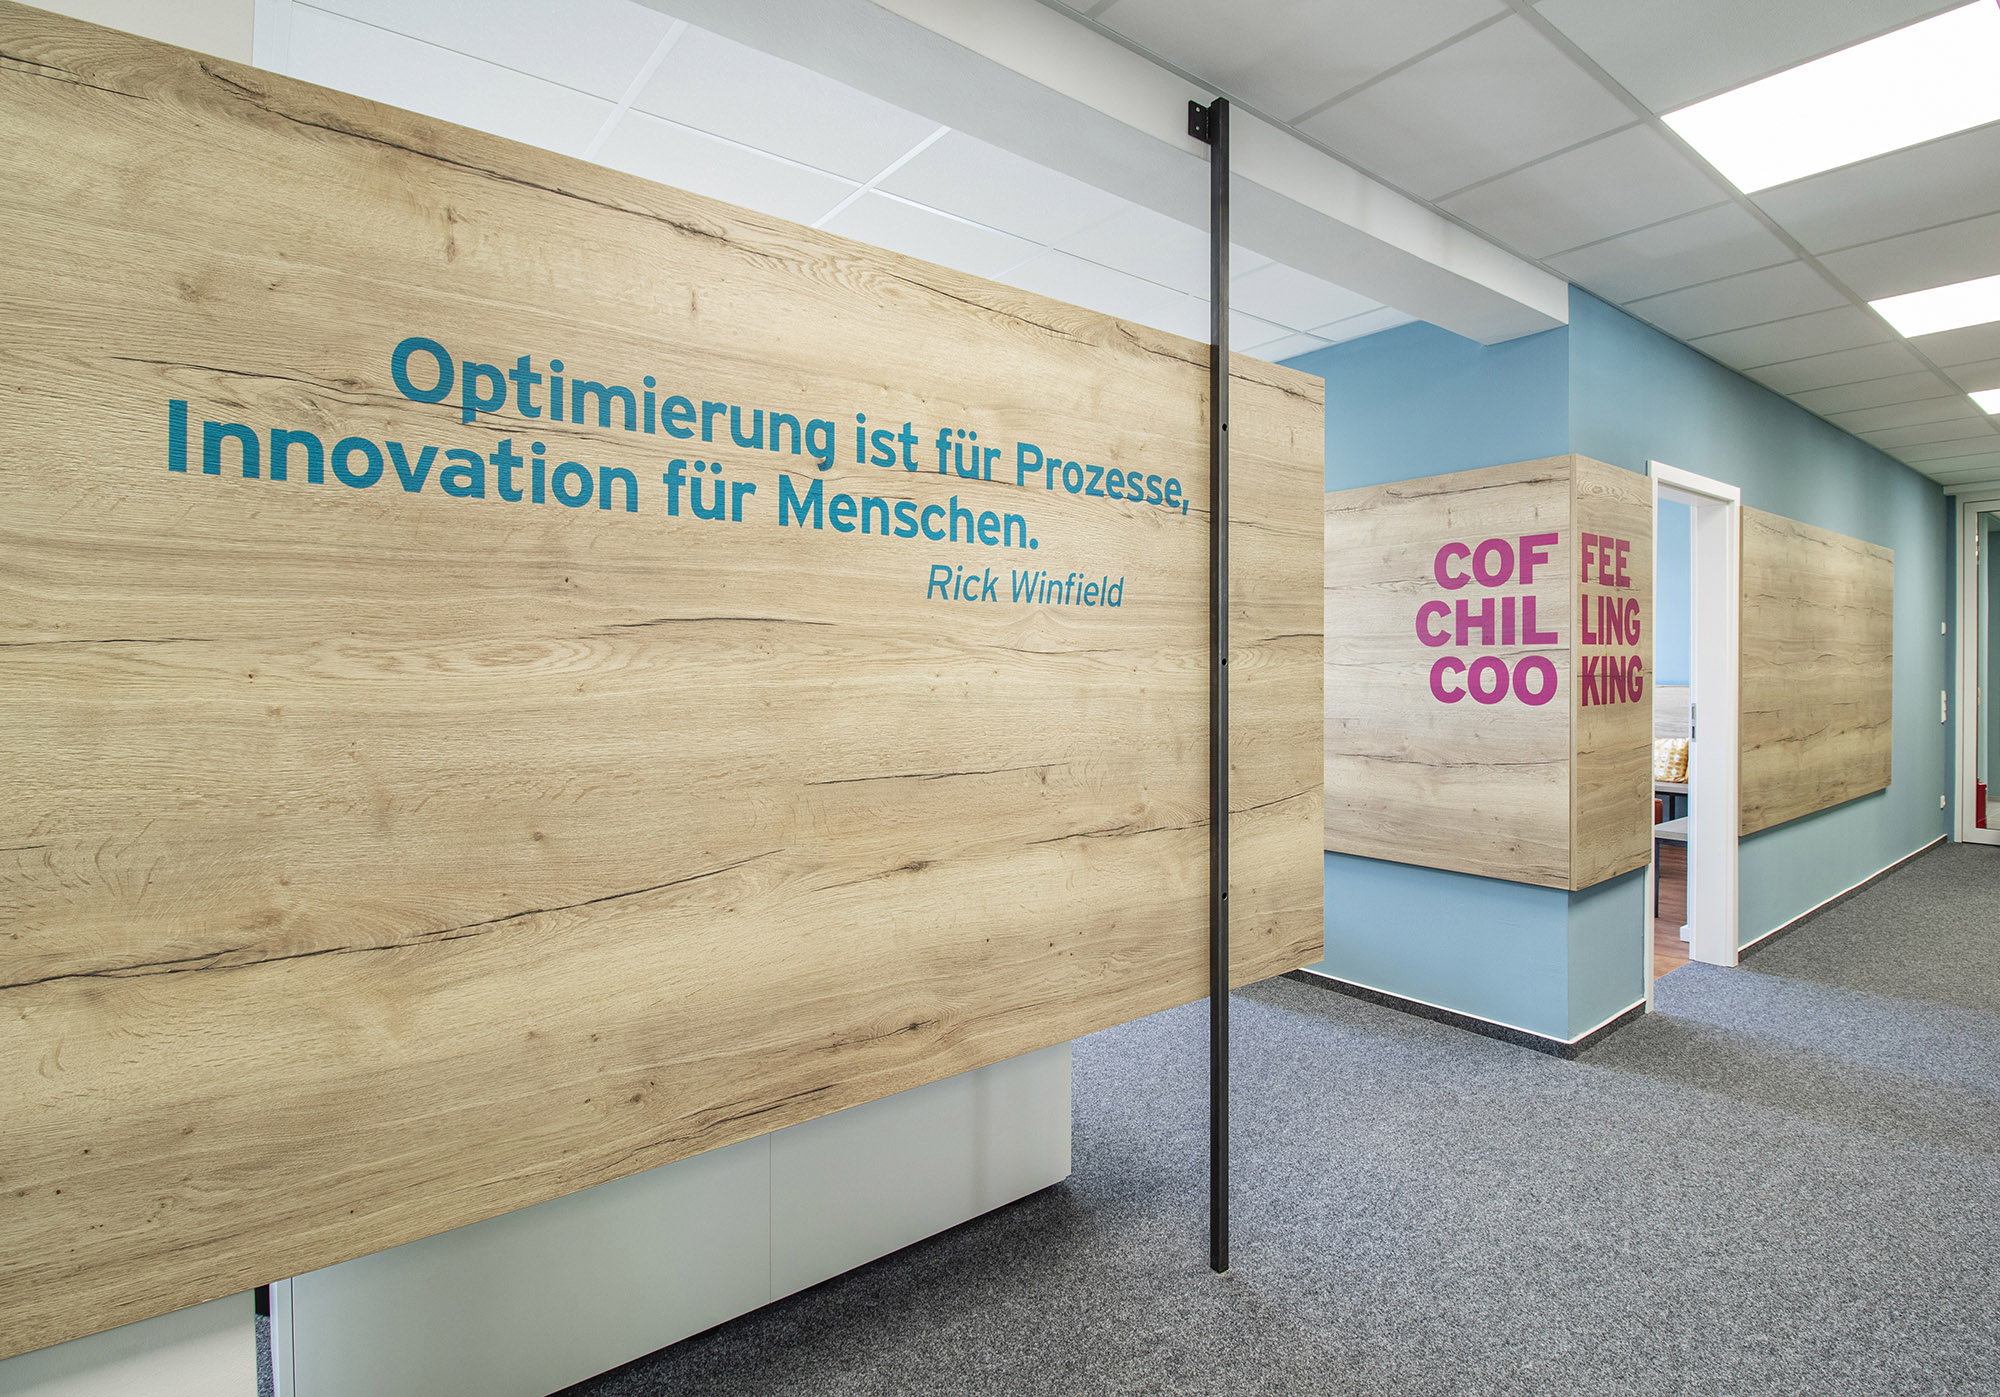 Ein partieller Raumtrenner im gleichen Format wie die Wandverkleidung im Hintergrund trägt das Zitat "Optimierung ist für Prozesse, Innovation für Menschen."